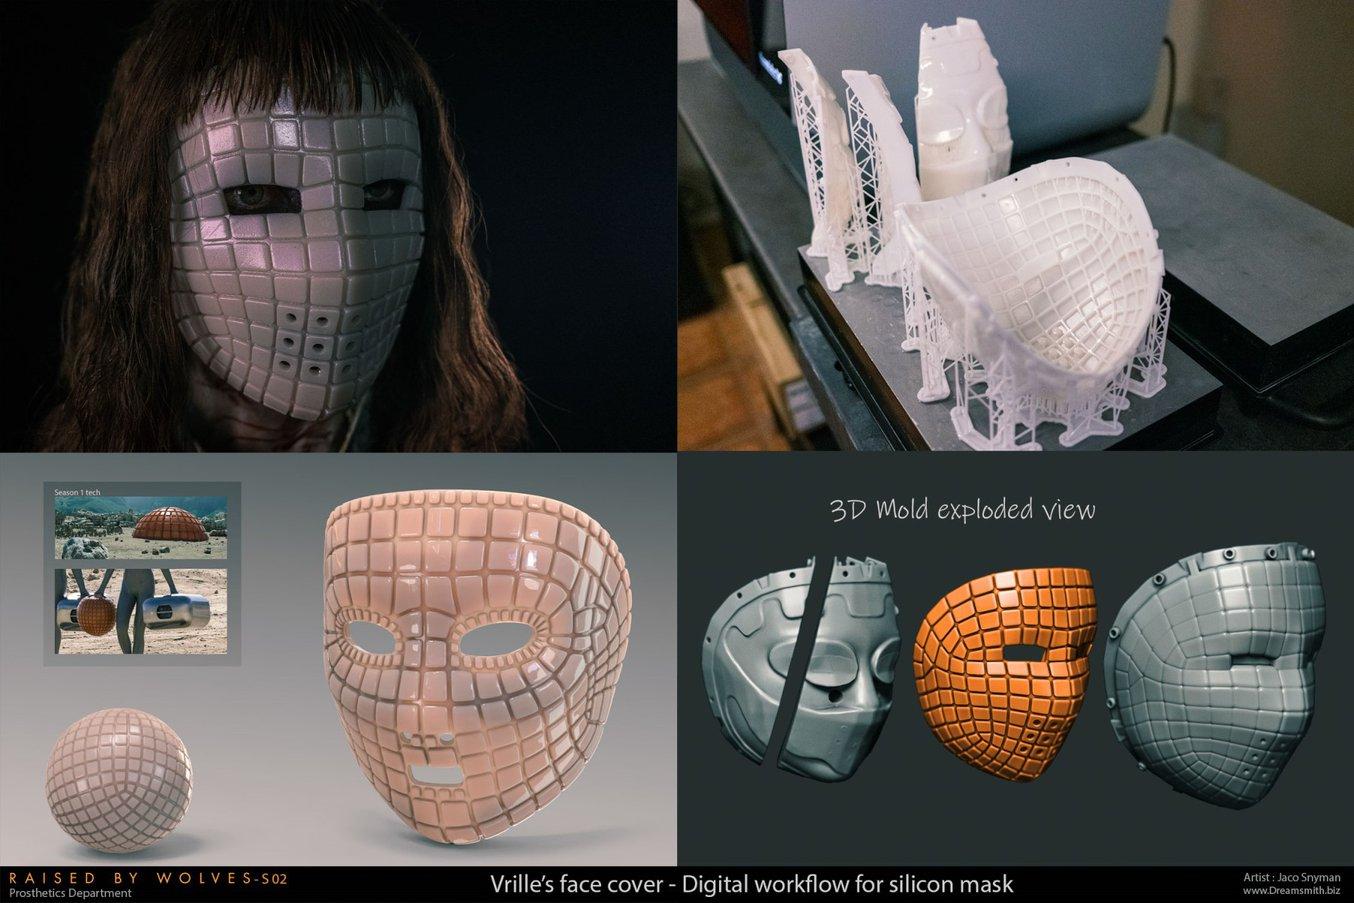 複雑な形状で細かいディテールの入ったシリコン製マスクをデザインし3Dプリント